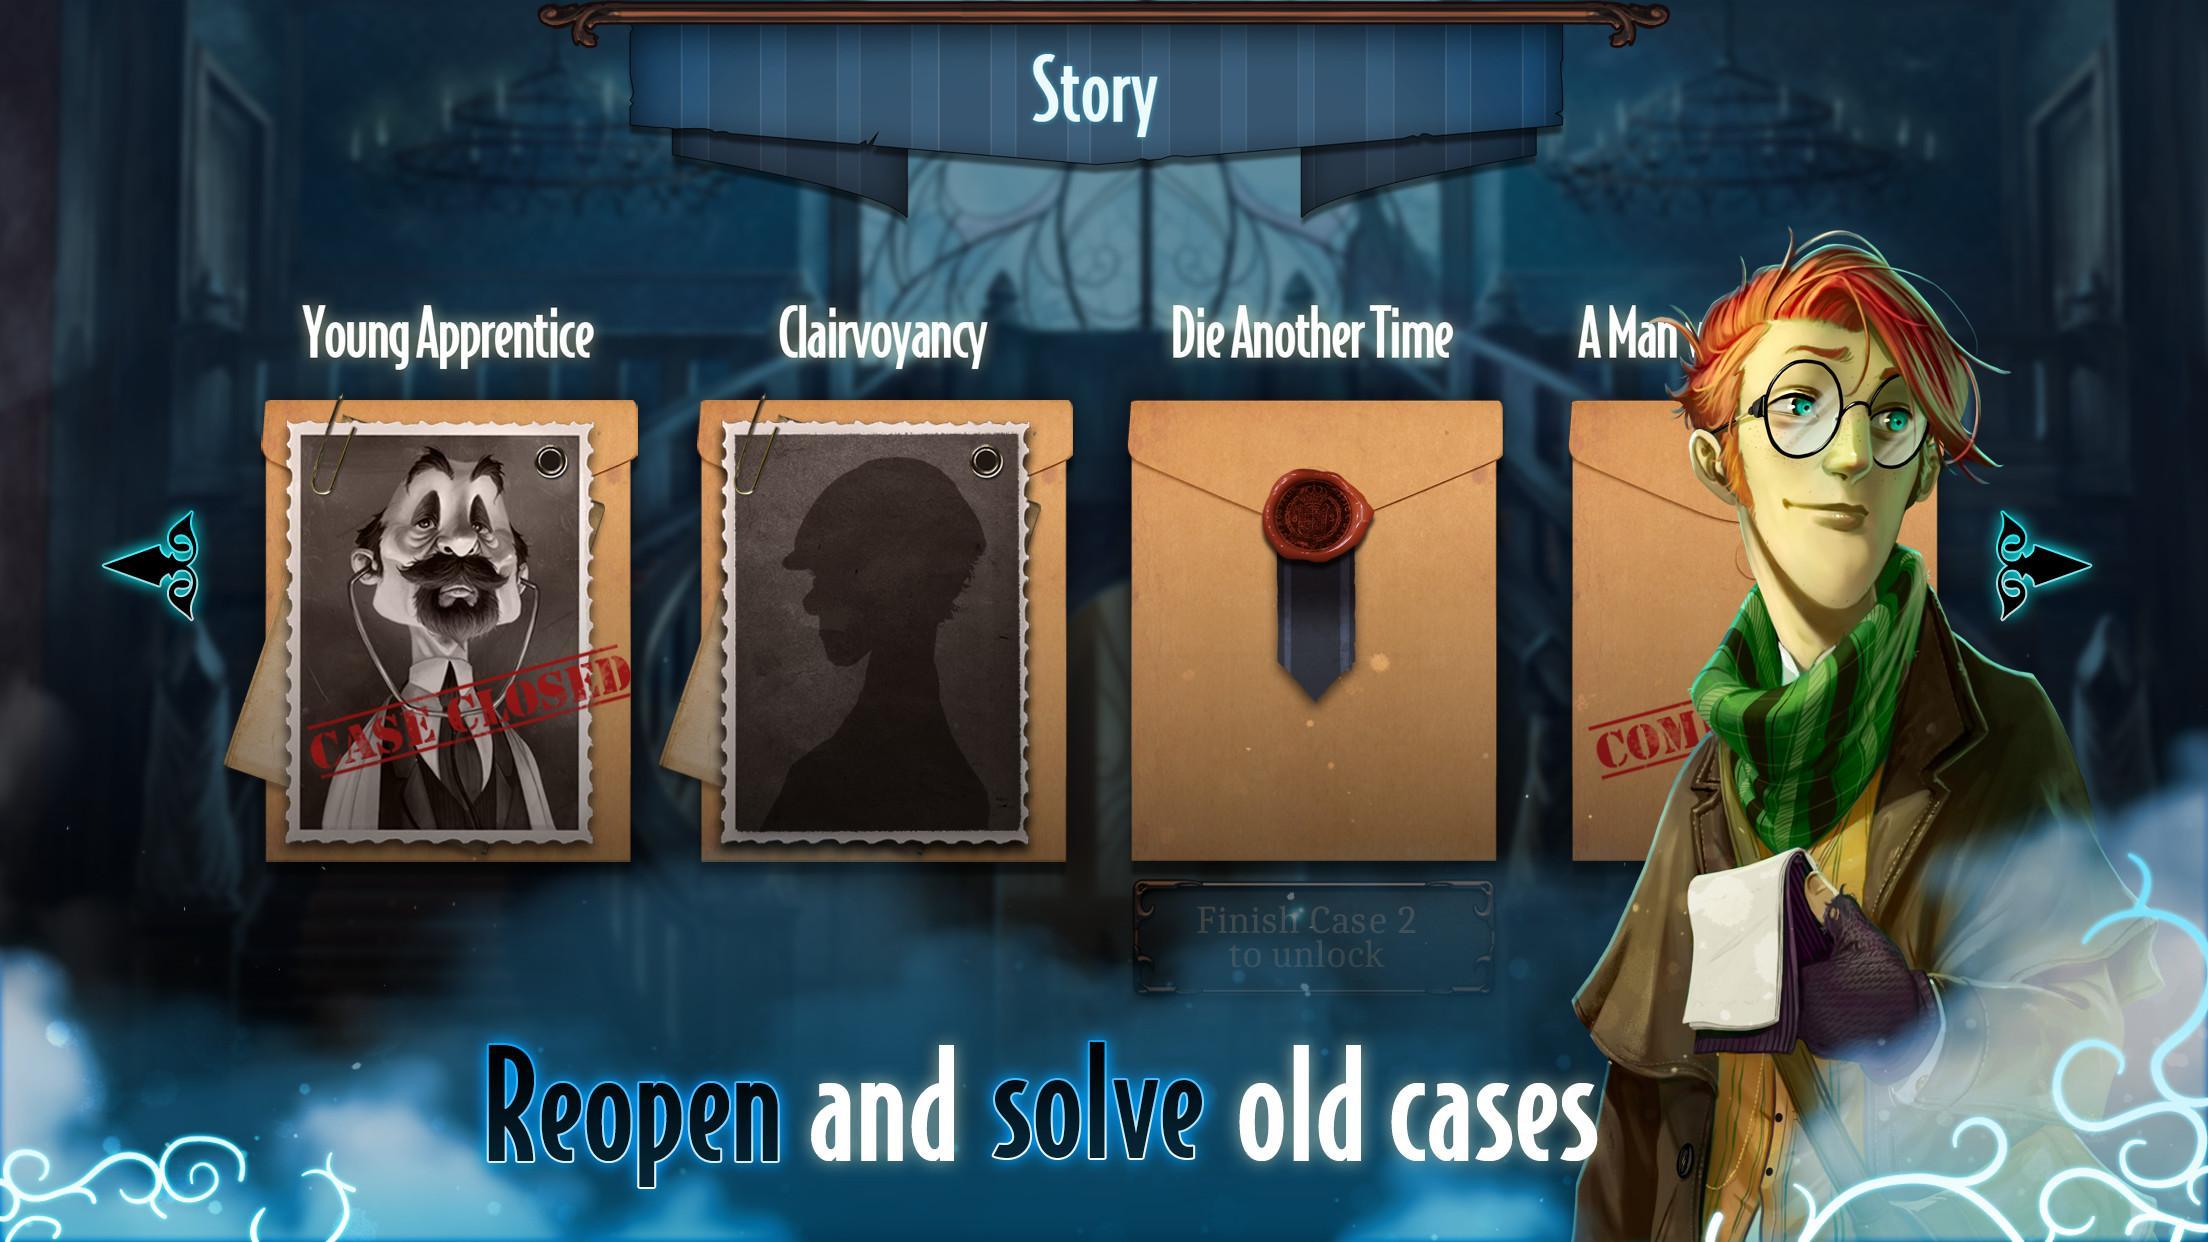 Mysterium: A Psychic Clue Game screenshot game